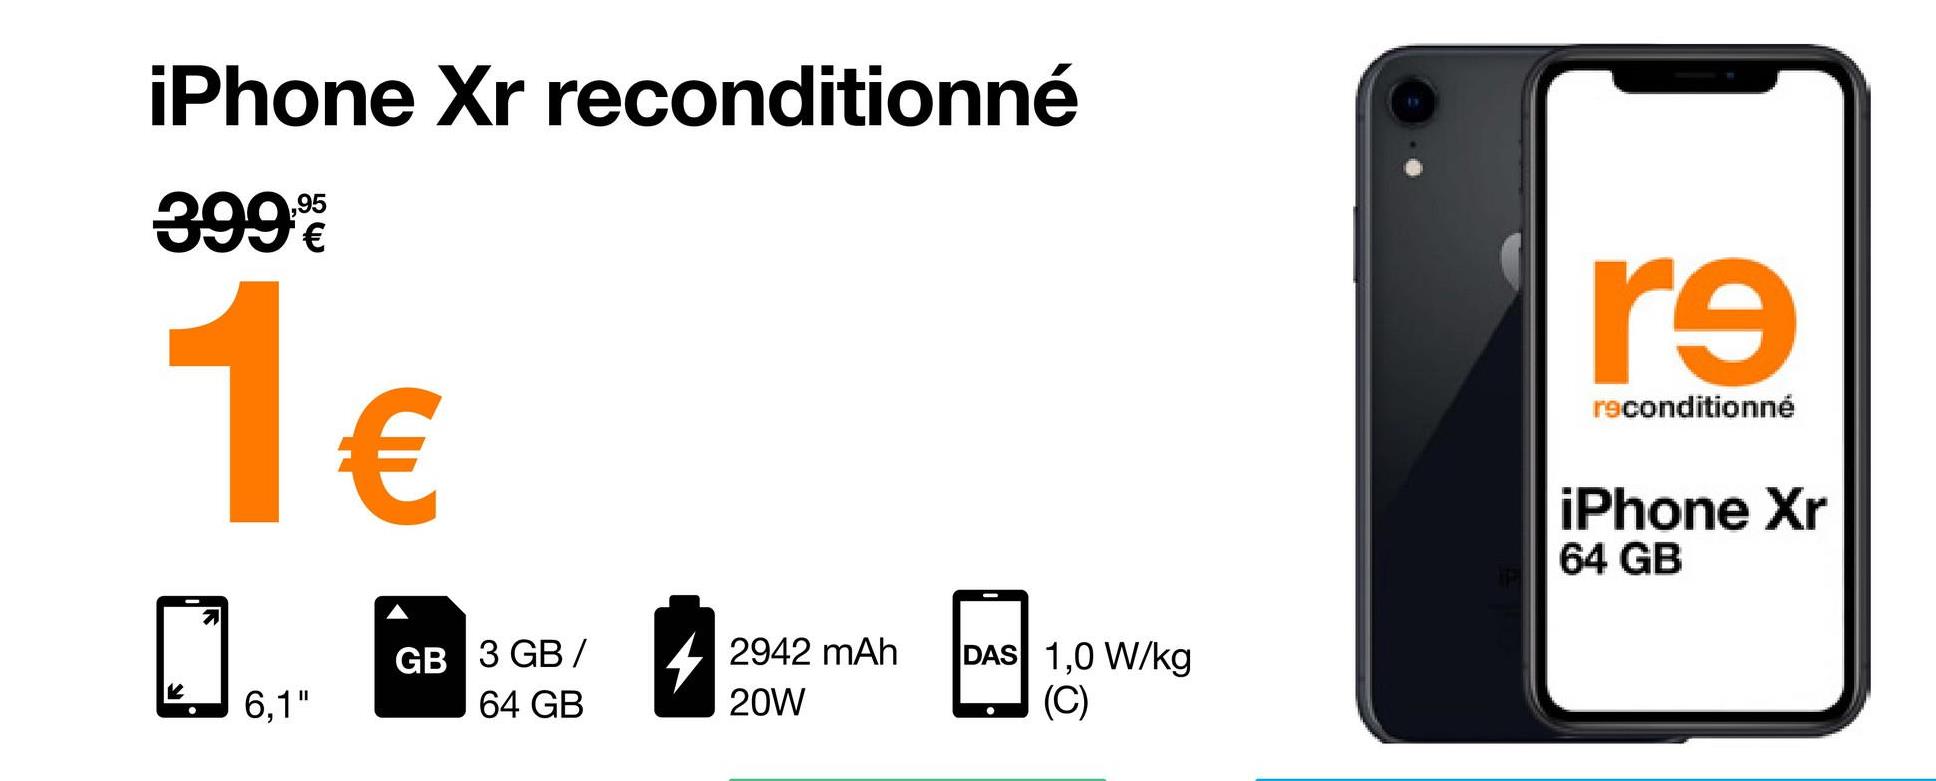 iPhone Xr reconditionné
399%
1€
6,1"
GB 3 GB/
64 GB
2942 mAh
20W
DAS 1,0 W/kg
(C)
9
re
reconditionné
iPhone Xr
64 GB